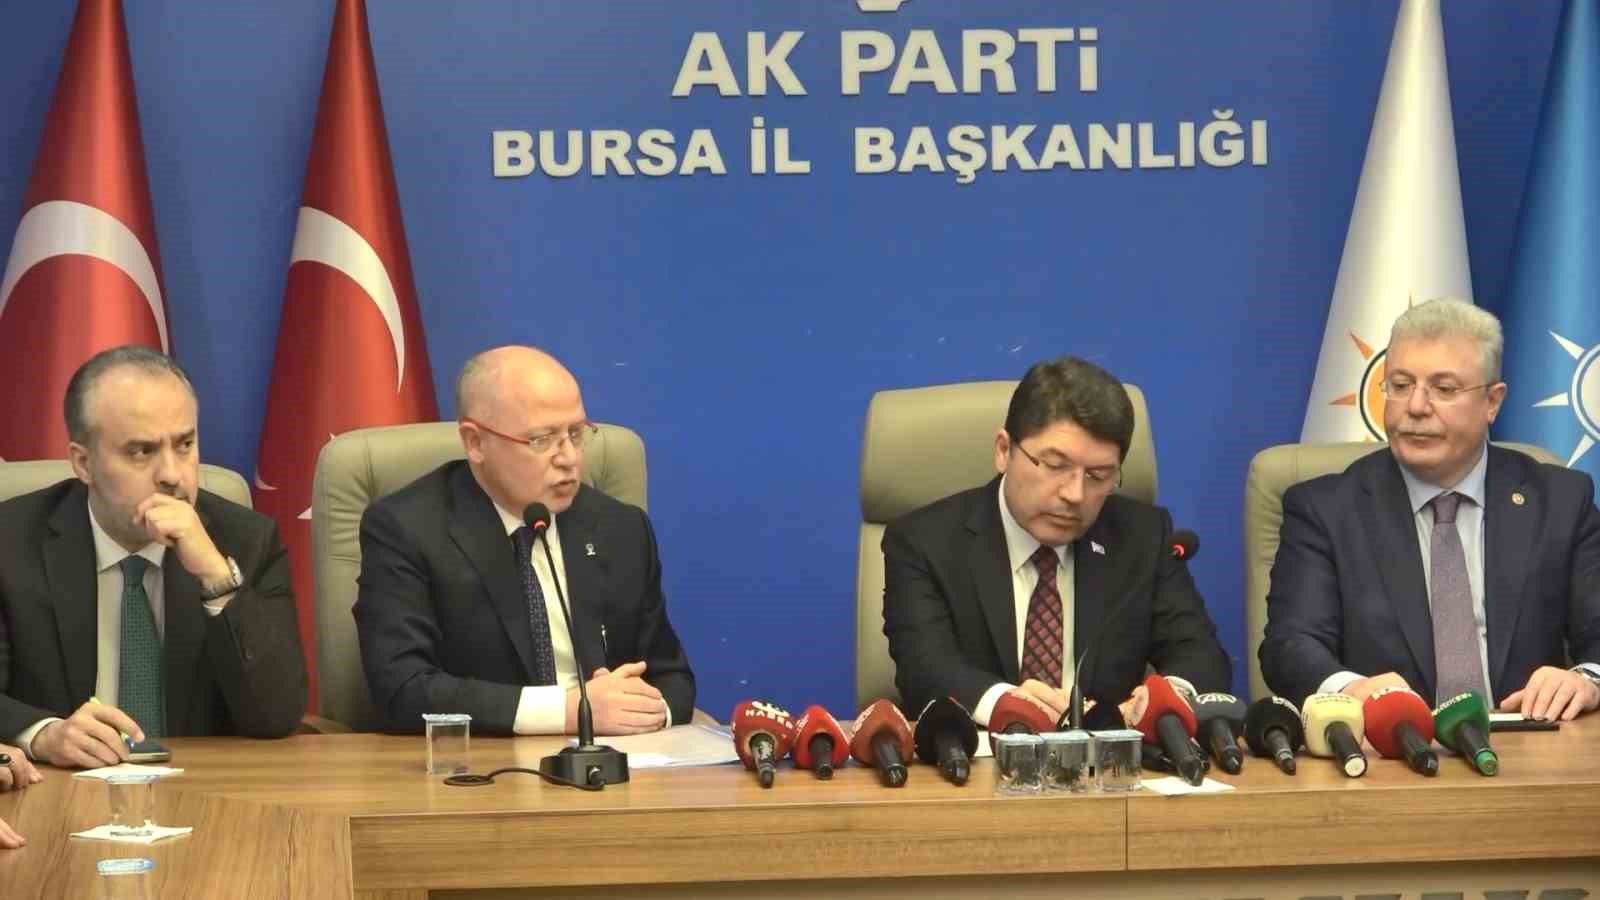 Adalet Bakanı Yılmaz Tunç: “Bursa 31 Mart’ta yine gerçek belediyecilik diyecektir”